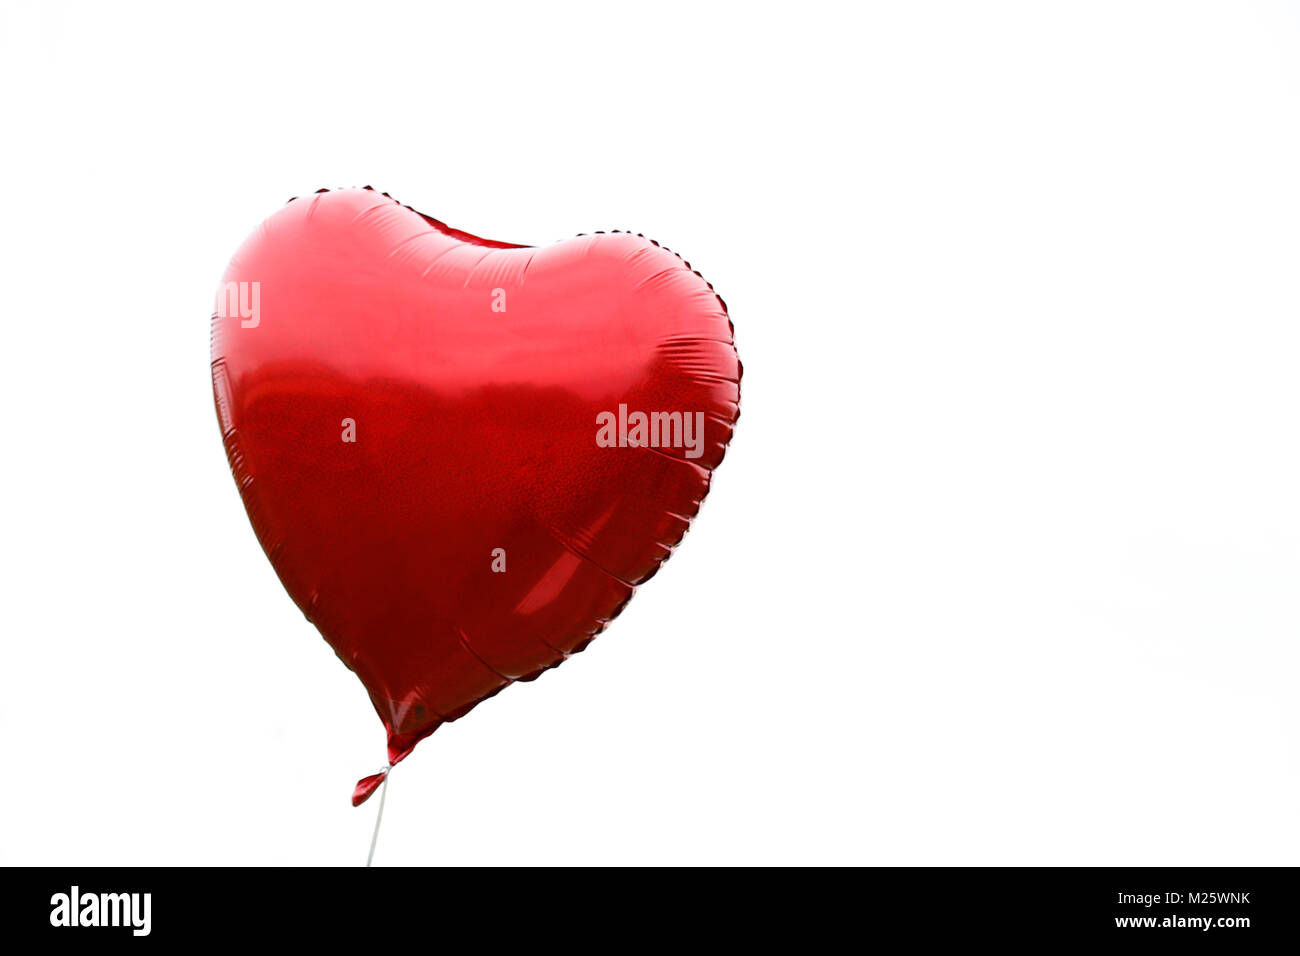 Herzförmige rote Gasballon in Weiß Einstellung Stockfoto